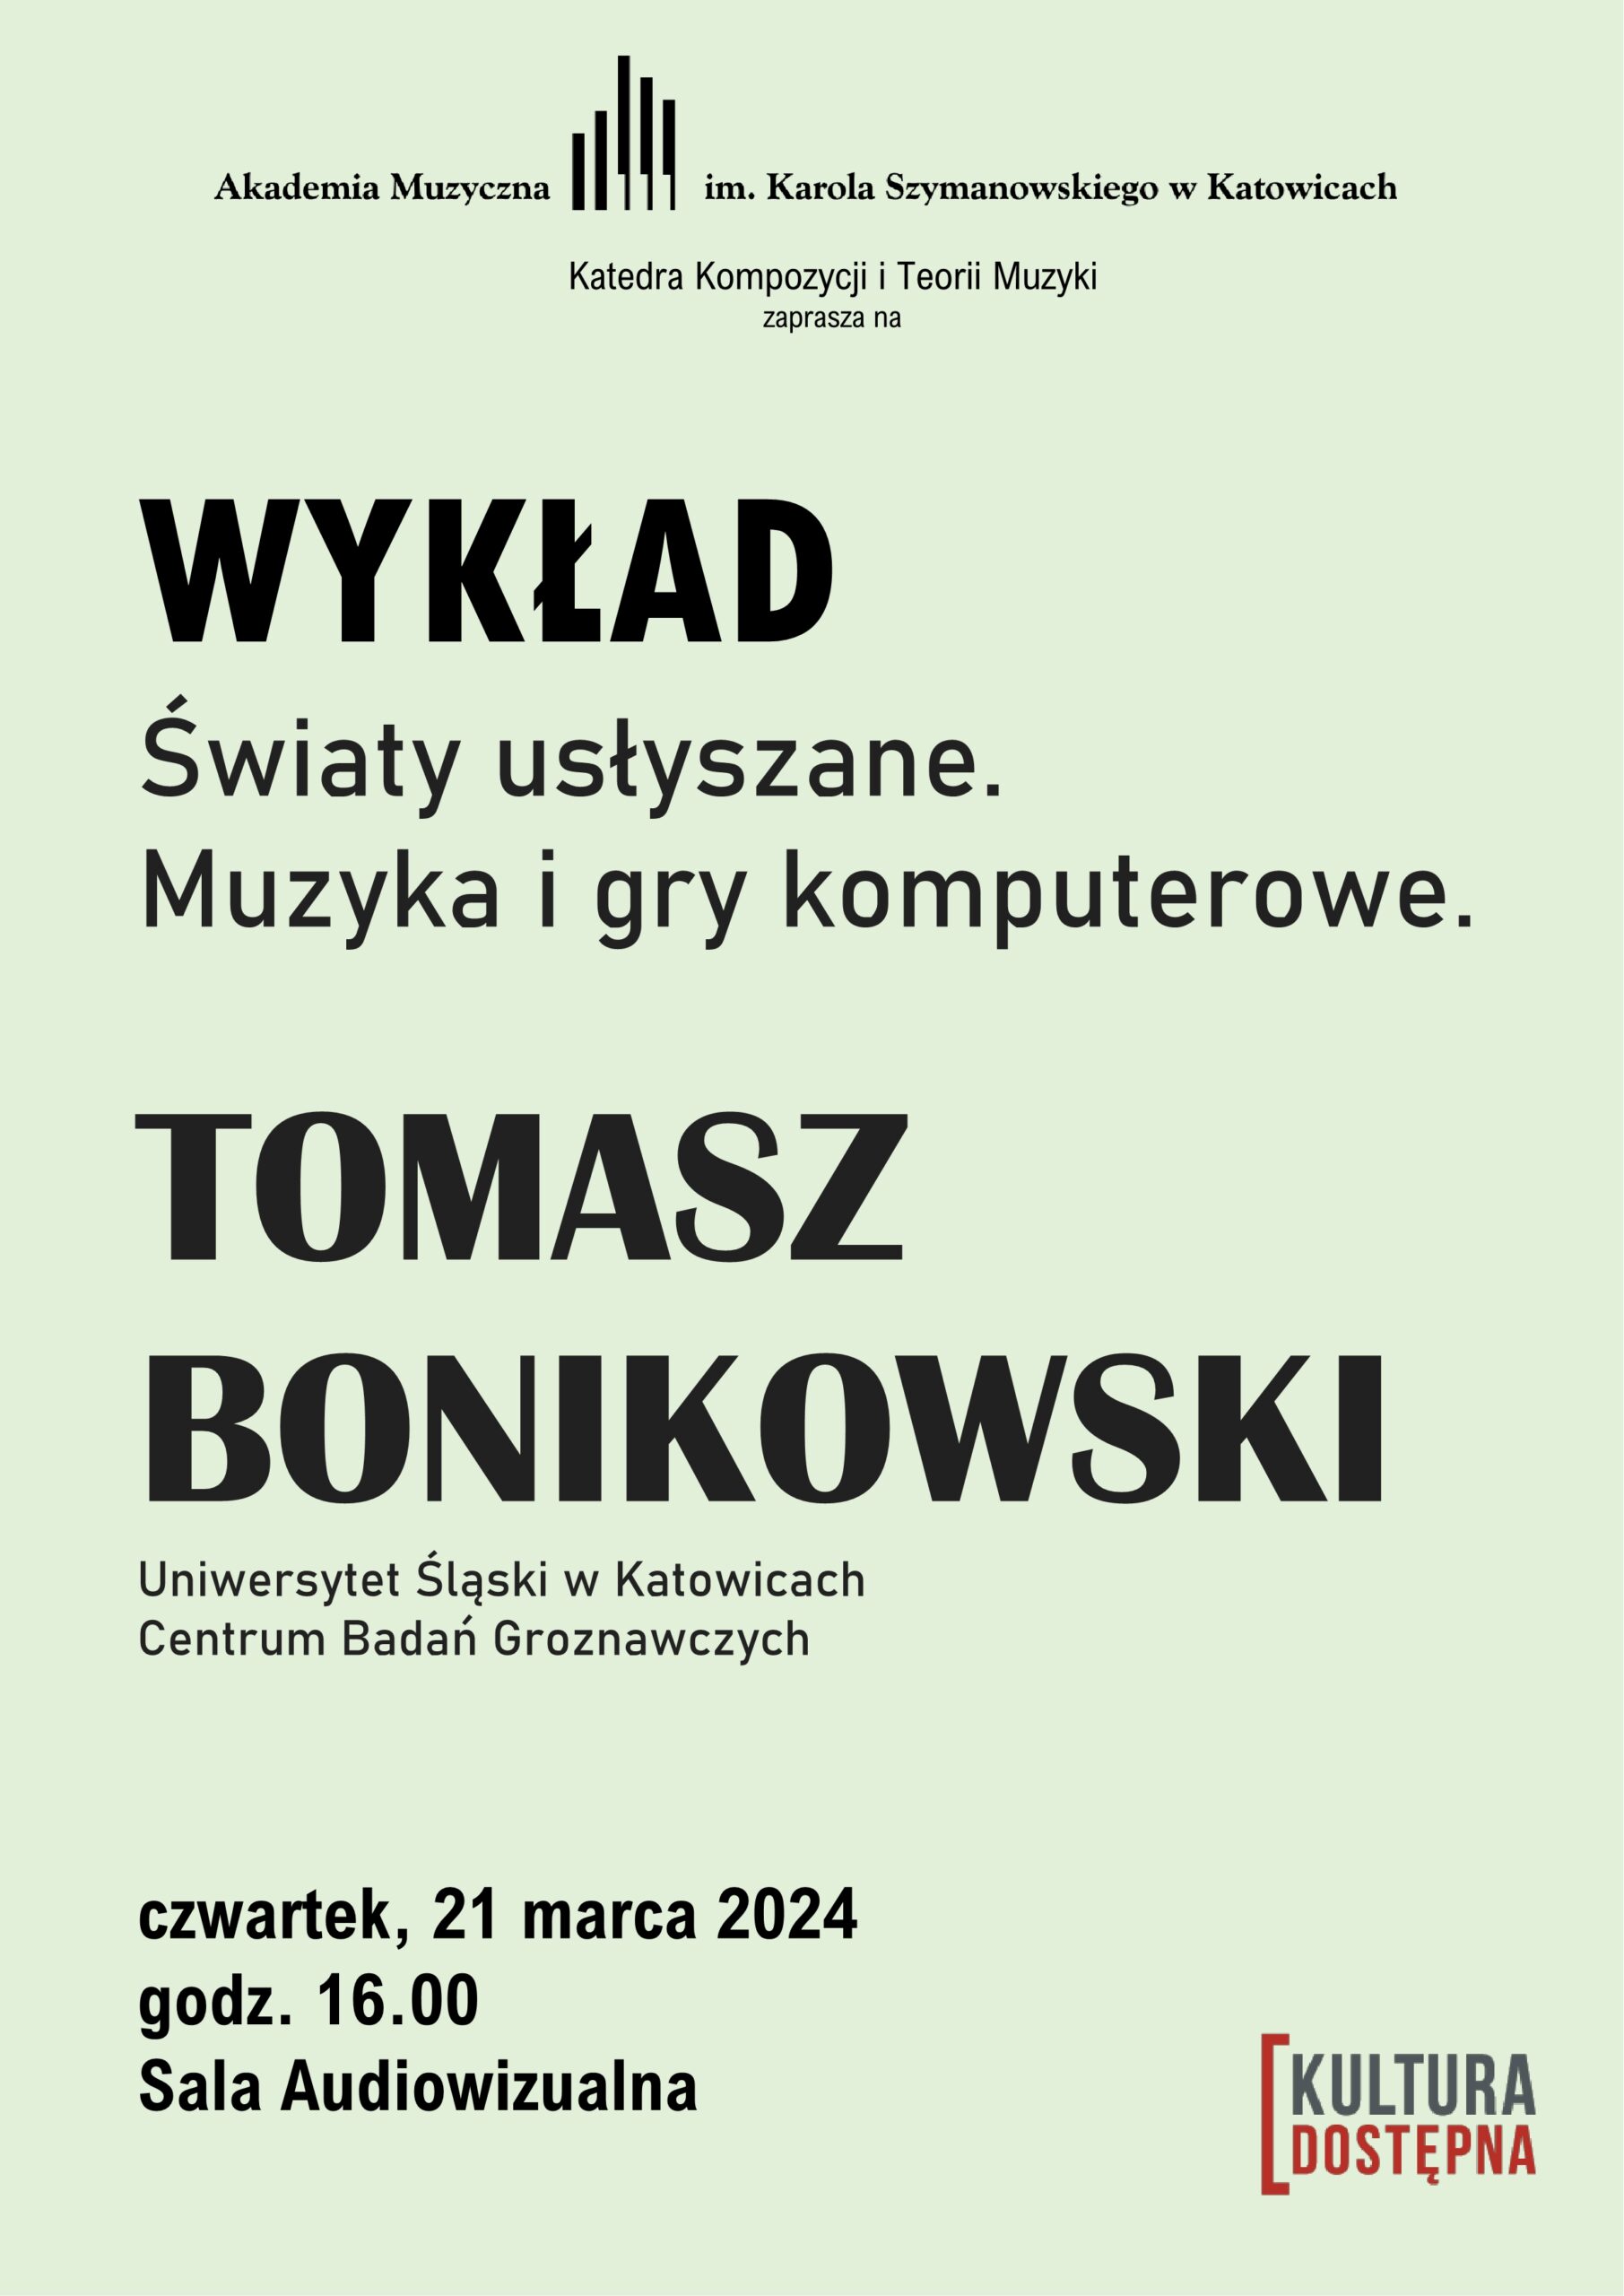 plakat informujący o wykładzie Tomasza Bonikowskiego